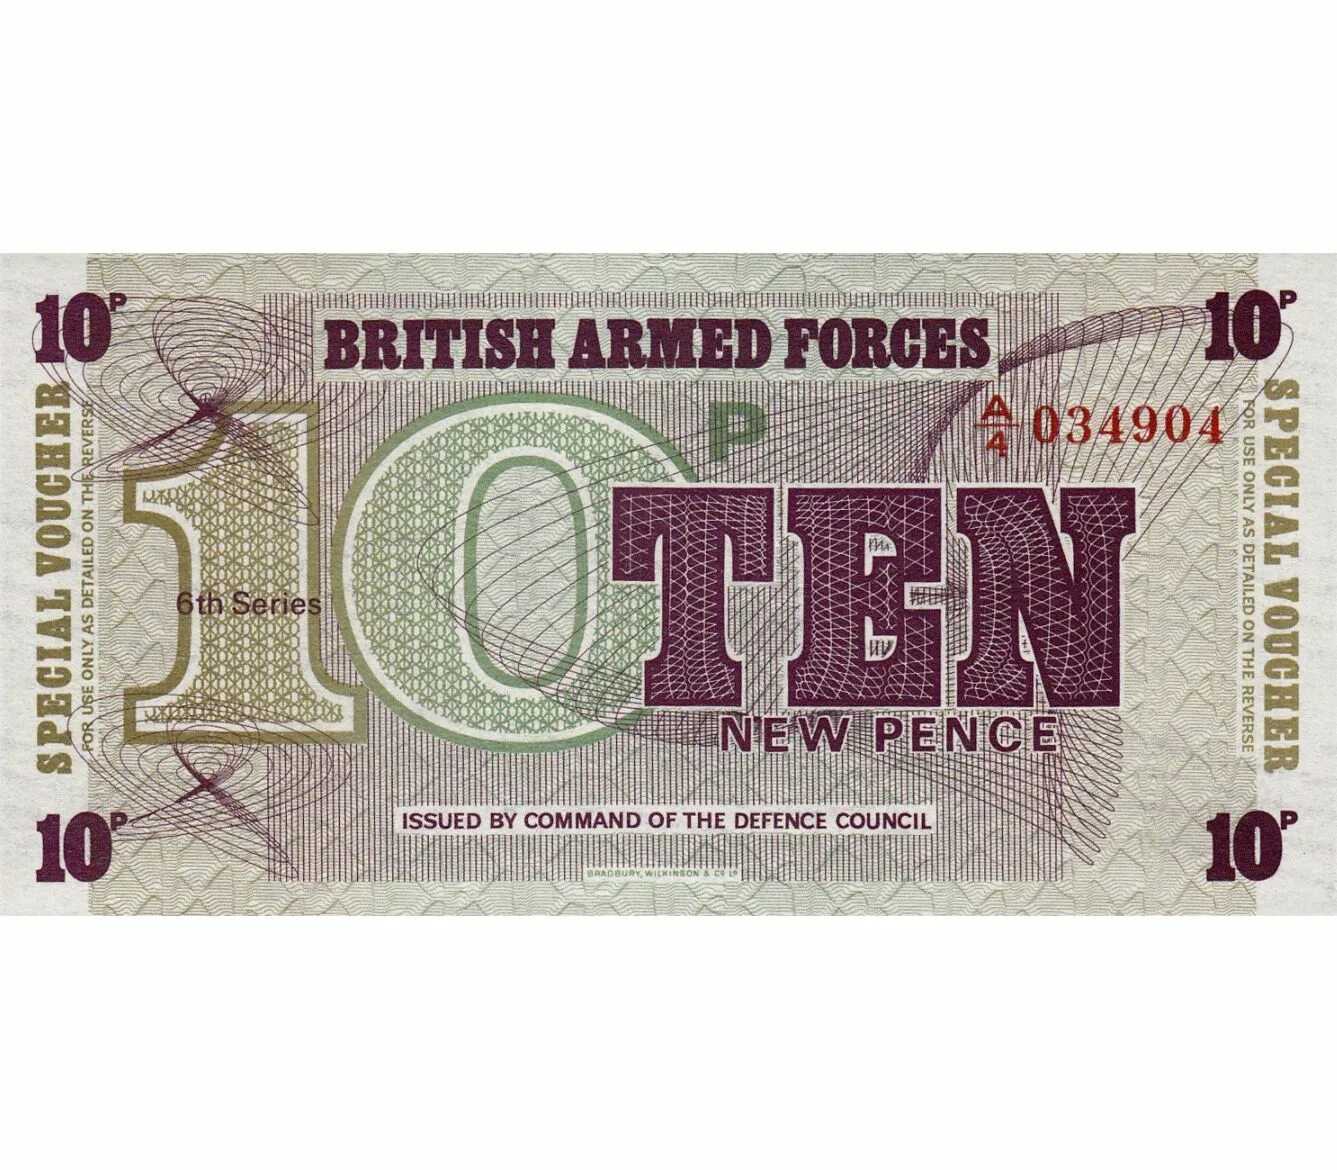 10 Новых пенсов. 10 Пенсов банкнота. Великобритания 10 новых пенсов. British Armed Forces банкнота.